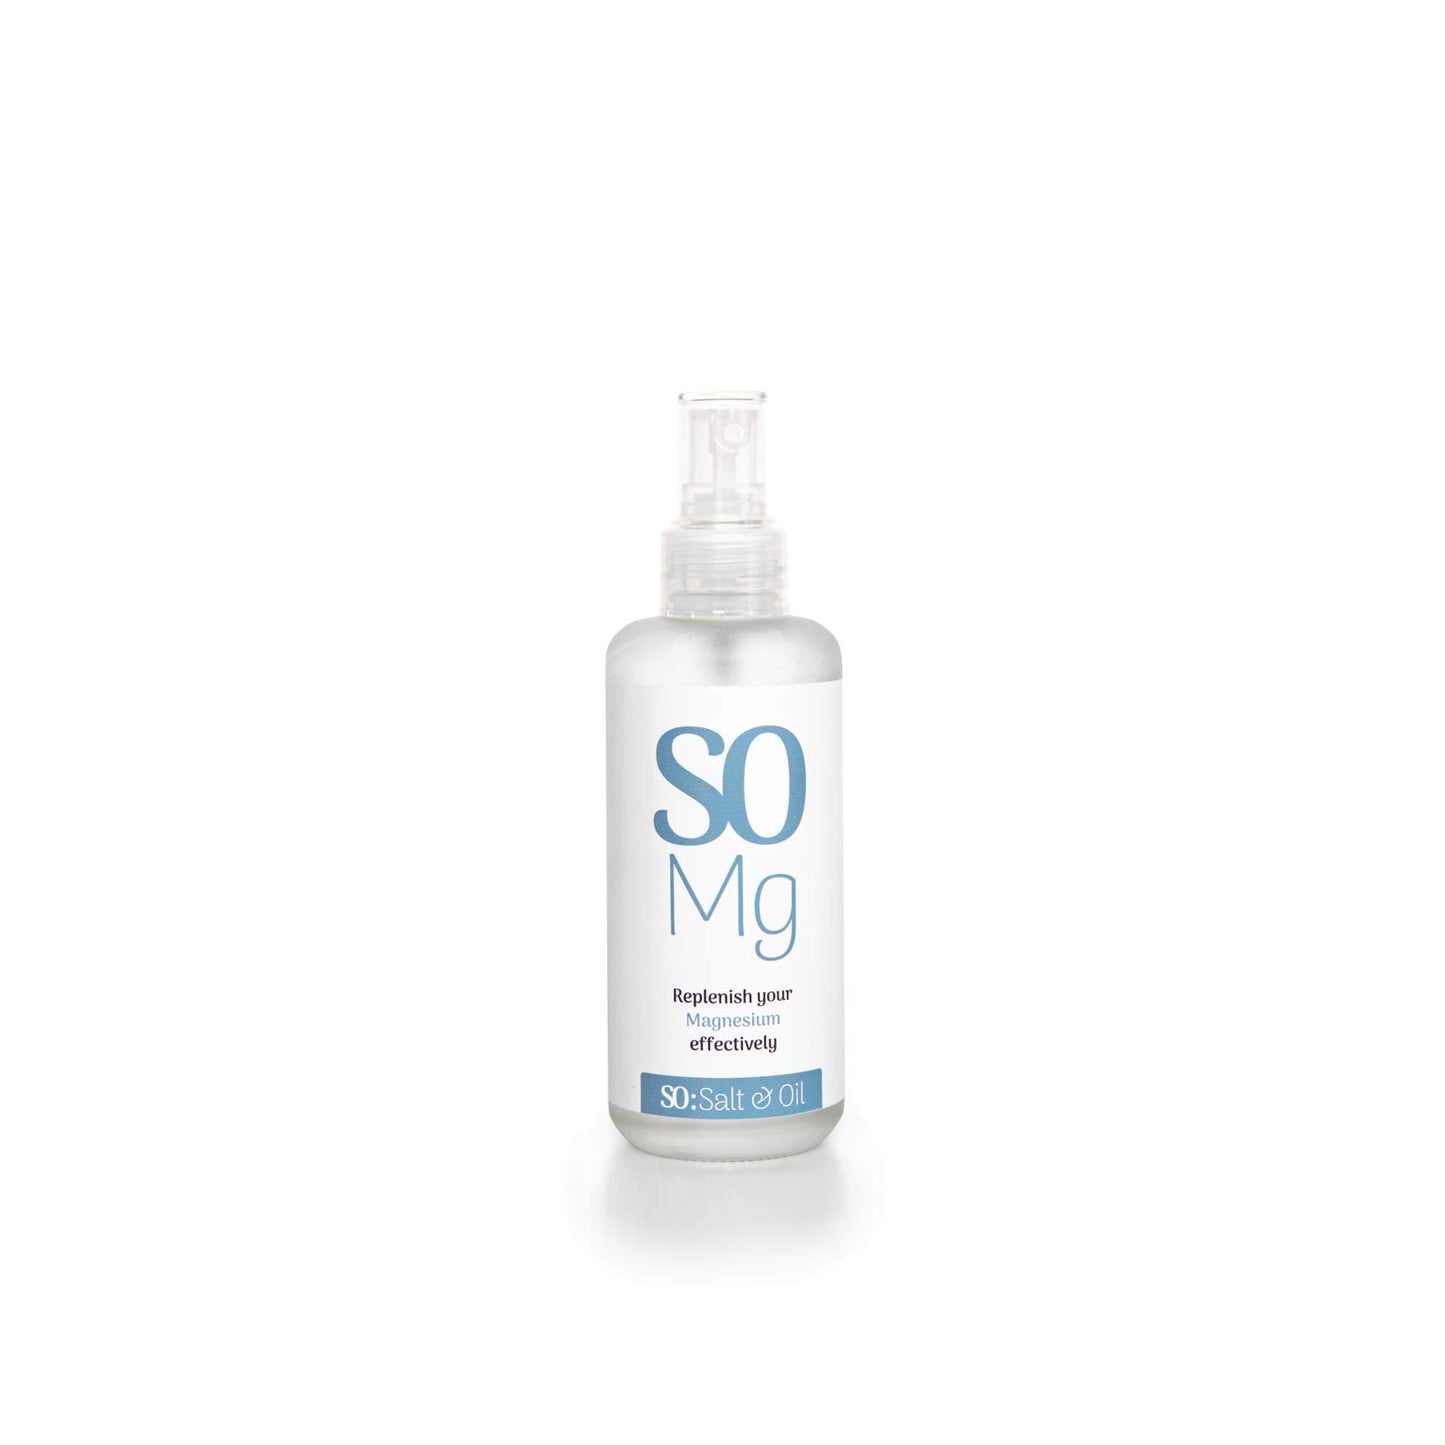 Mg Magnesium Oil Spray Glass Bottle 150g